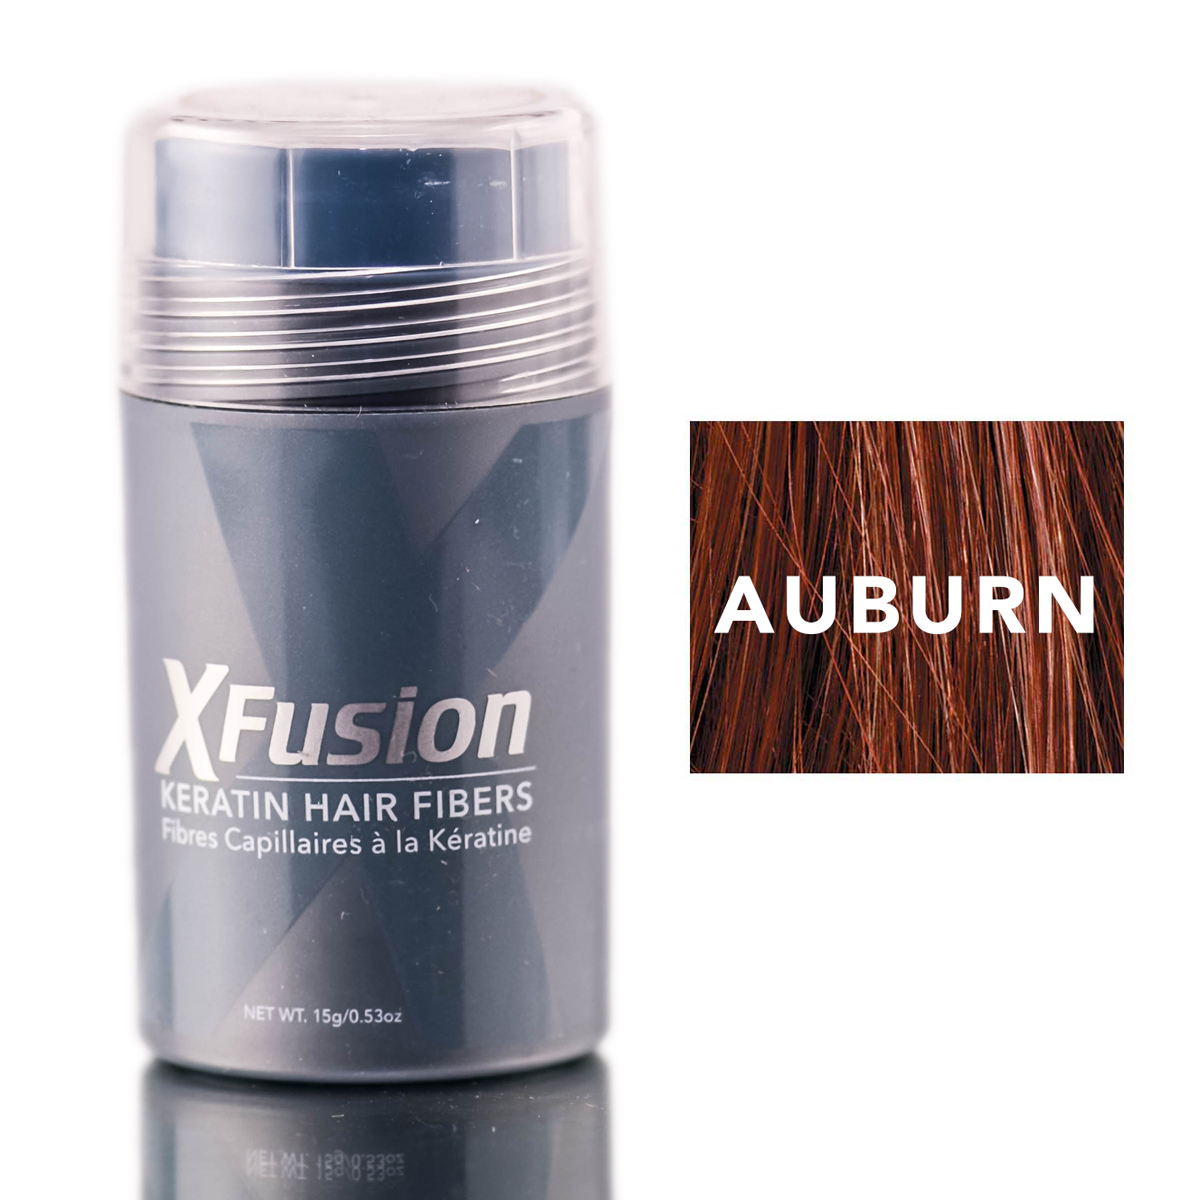 X-fusion 217835 0.53 Oz Keratin Hair Fibers, Auburn